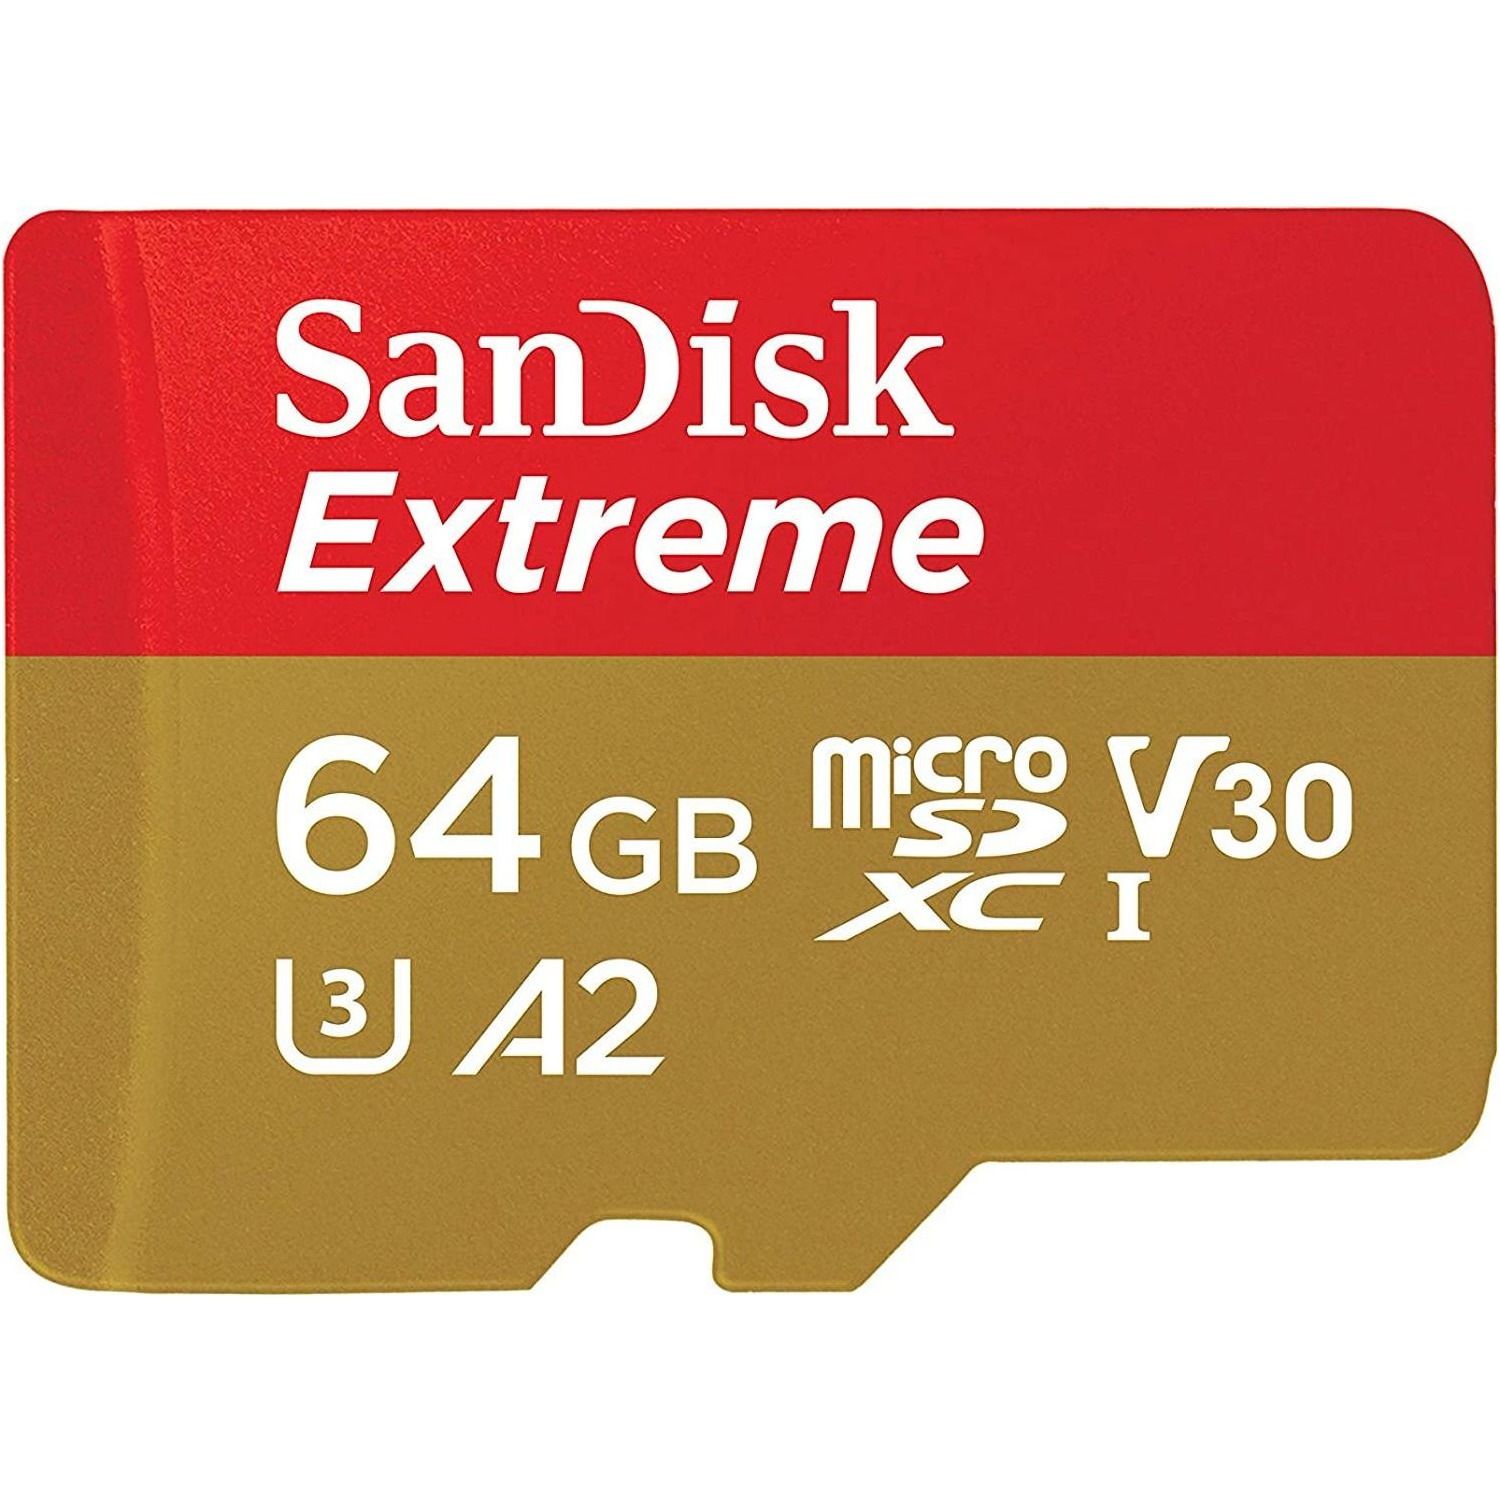 Immagine per MicroSD San Disk Extreme 64 GB con adattatore da DIMOStore